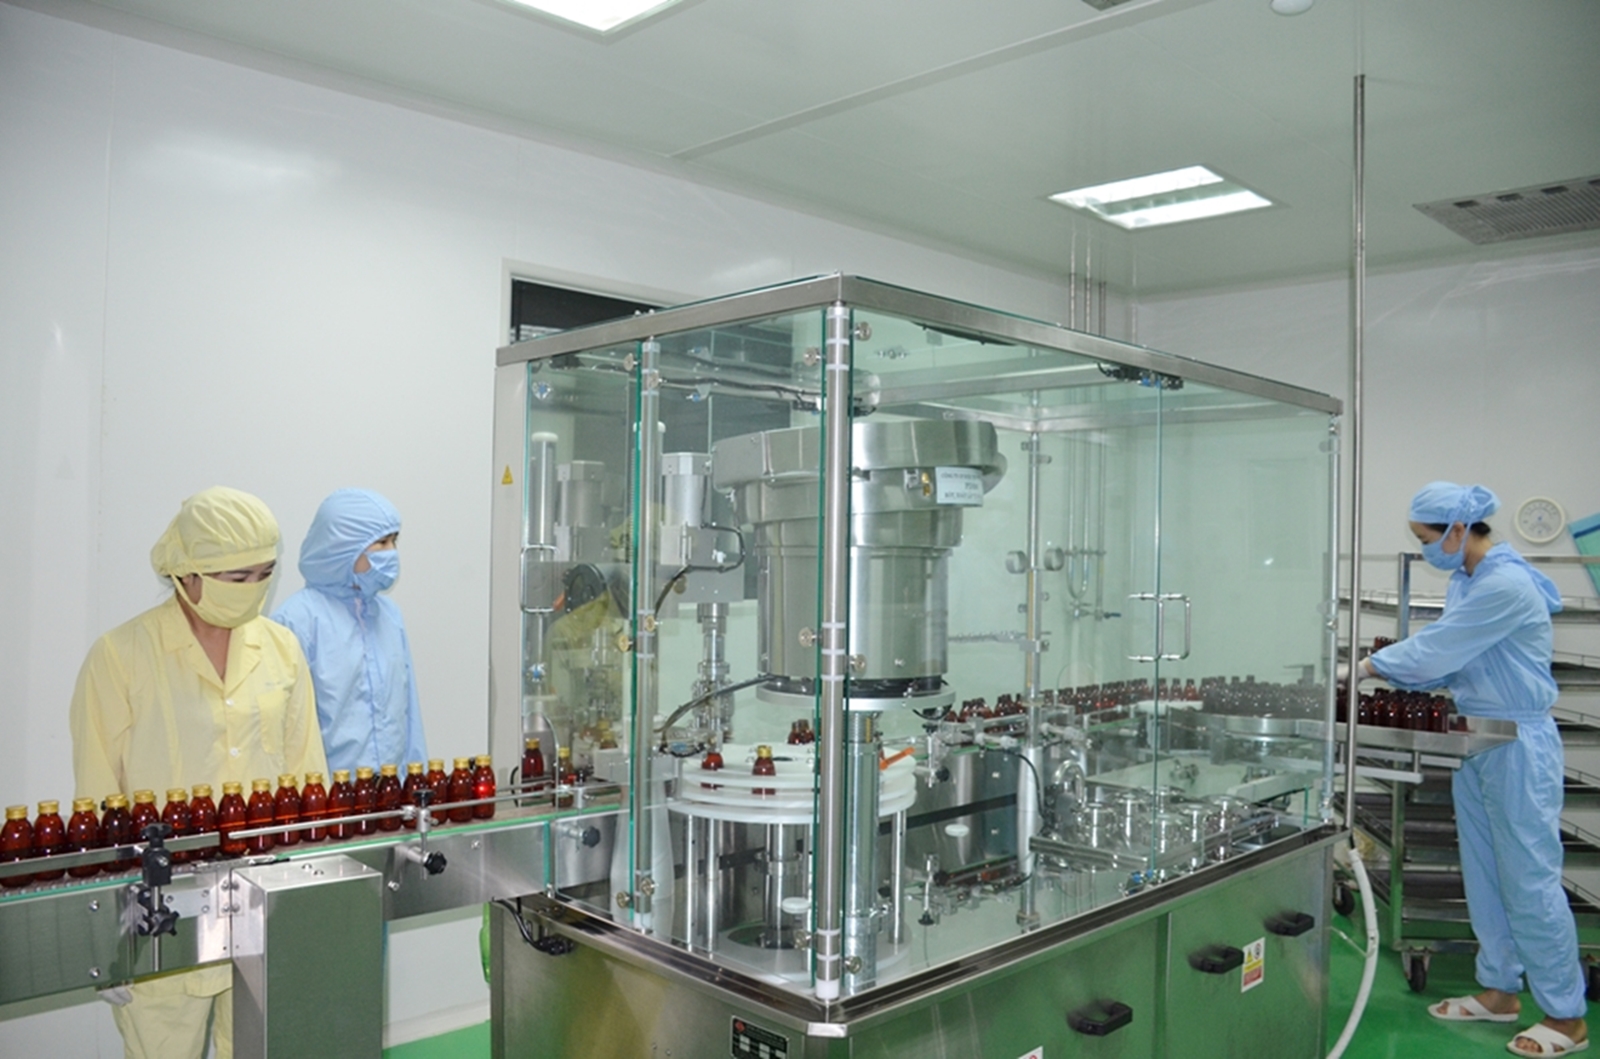 Nhà máy Sản xuất thuốc từ dược liệu đạt chuẩn GMP, GLP và GSP - WHO của Công ty CP Dược và vật tư y tế Quảng Ninh.